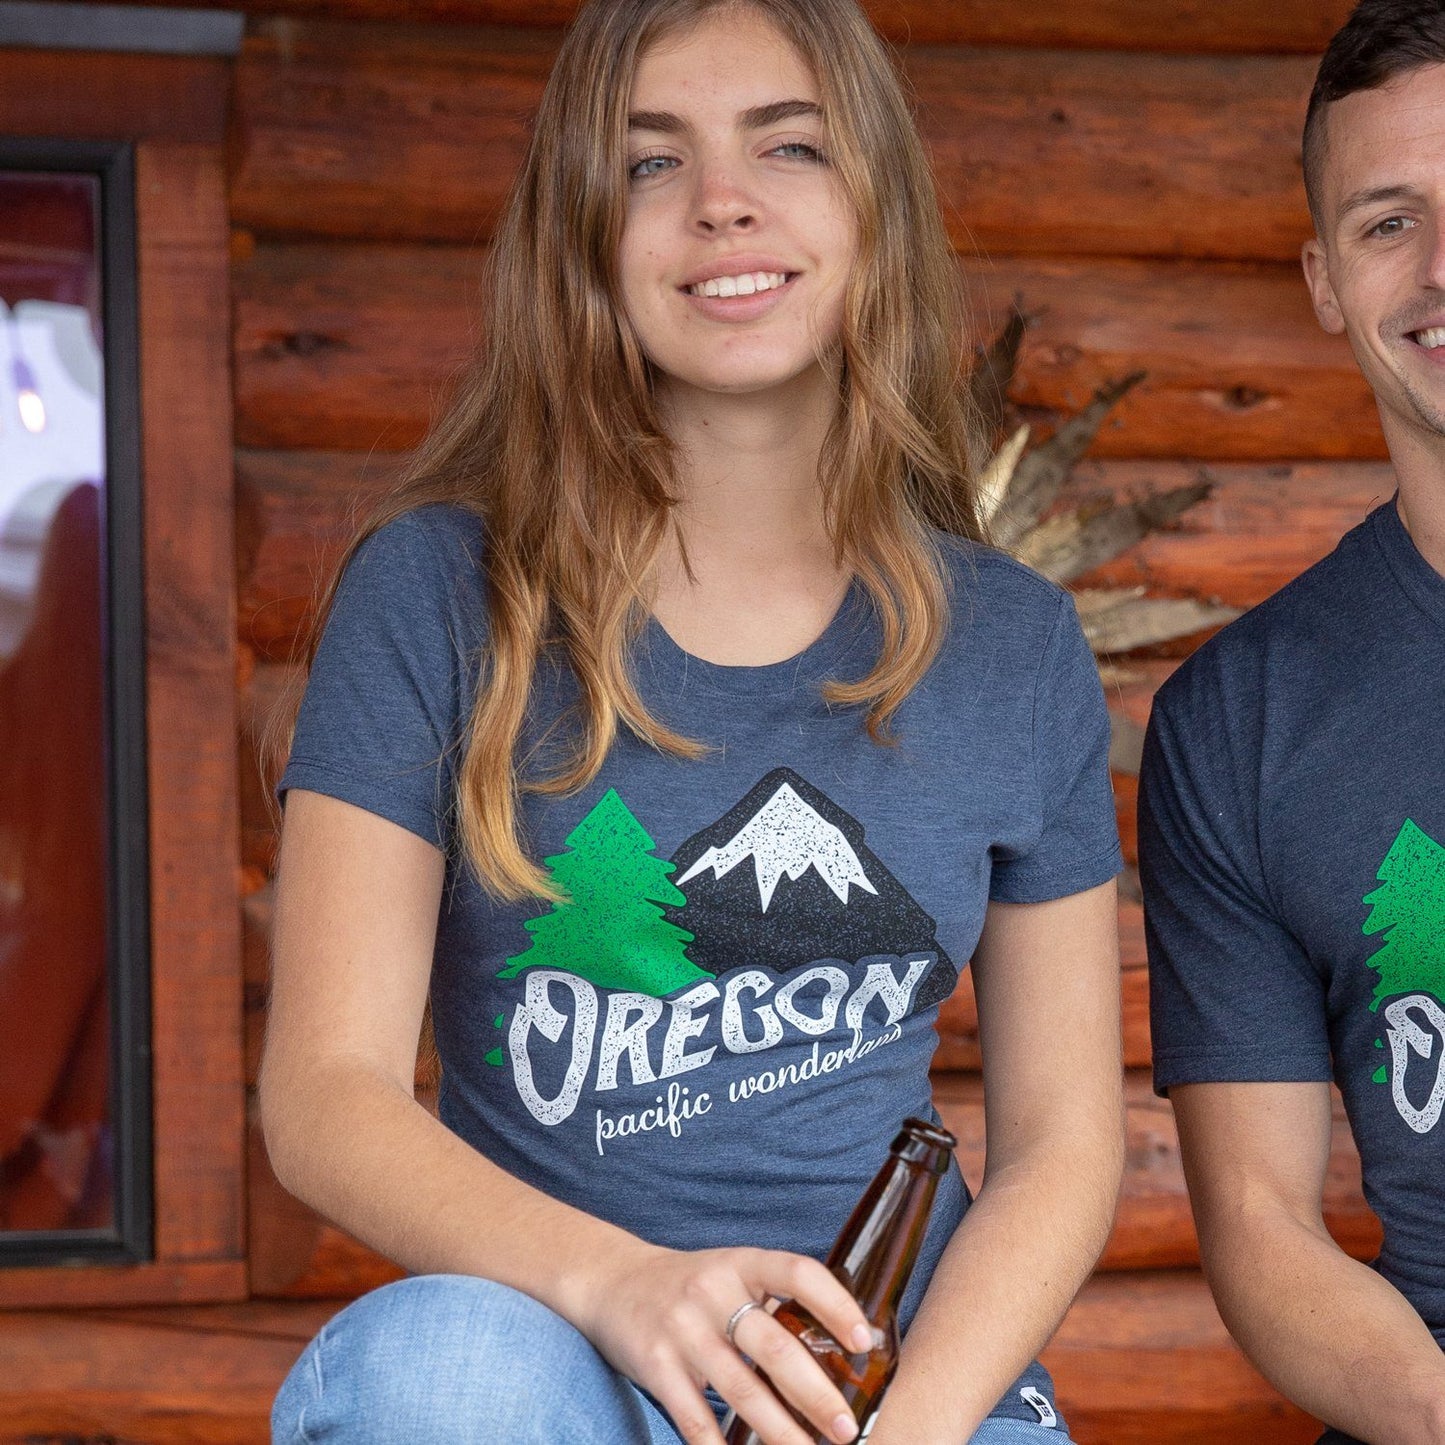 Oregon Pacific Wonderland Vintage | Women's Crewneck T-Shirt